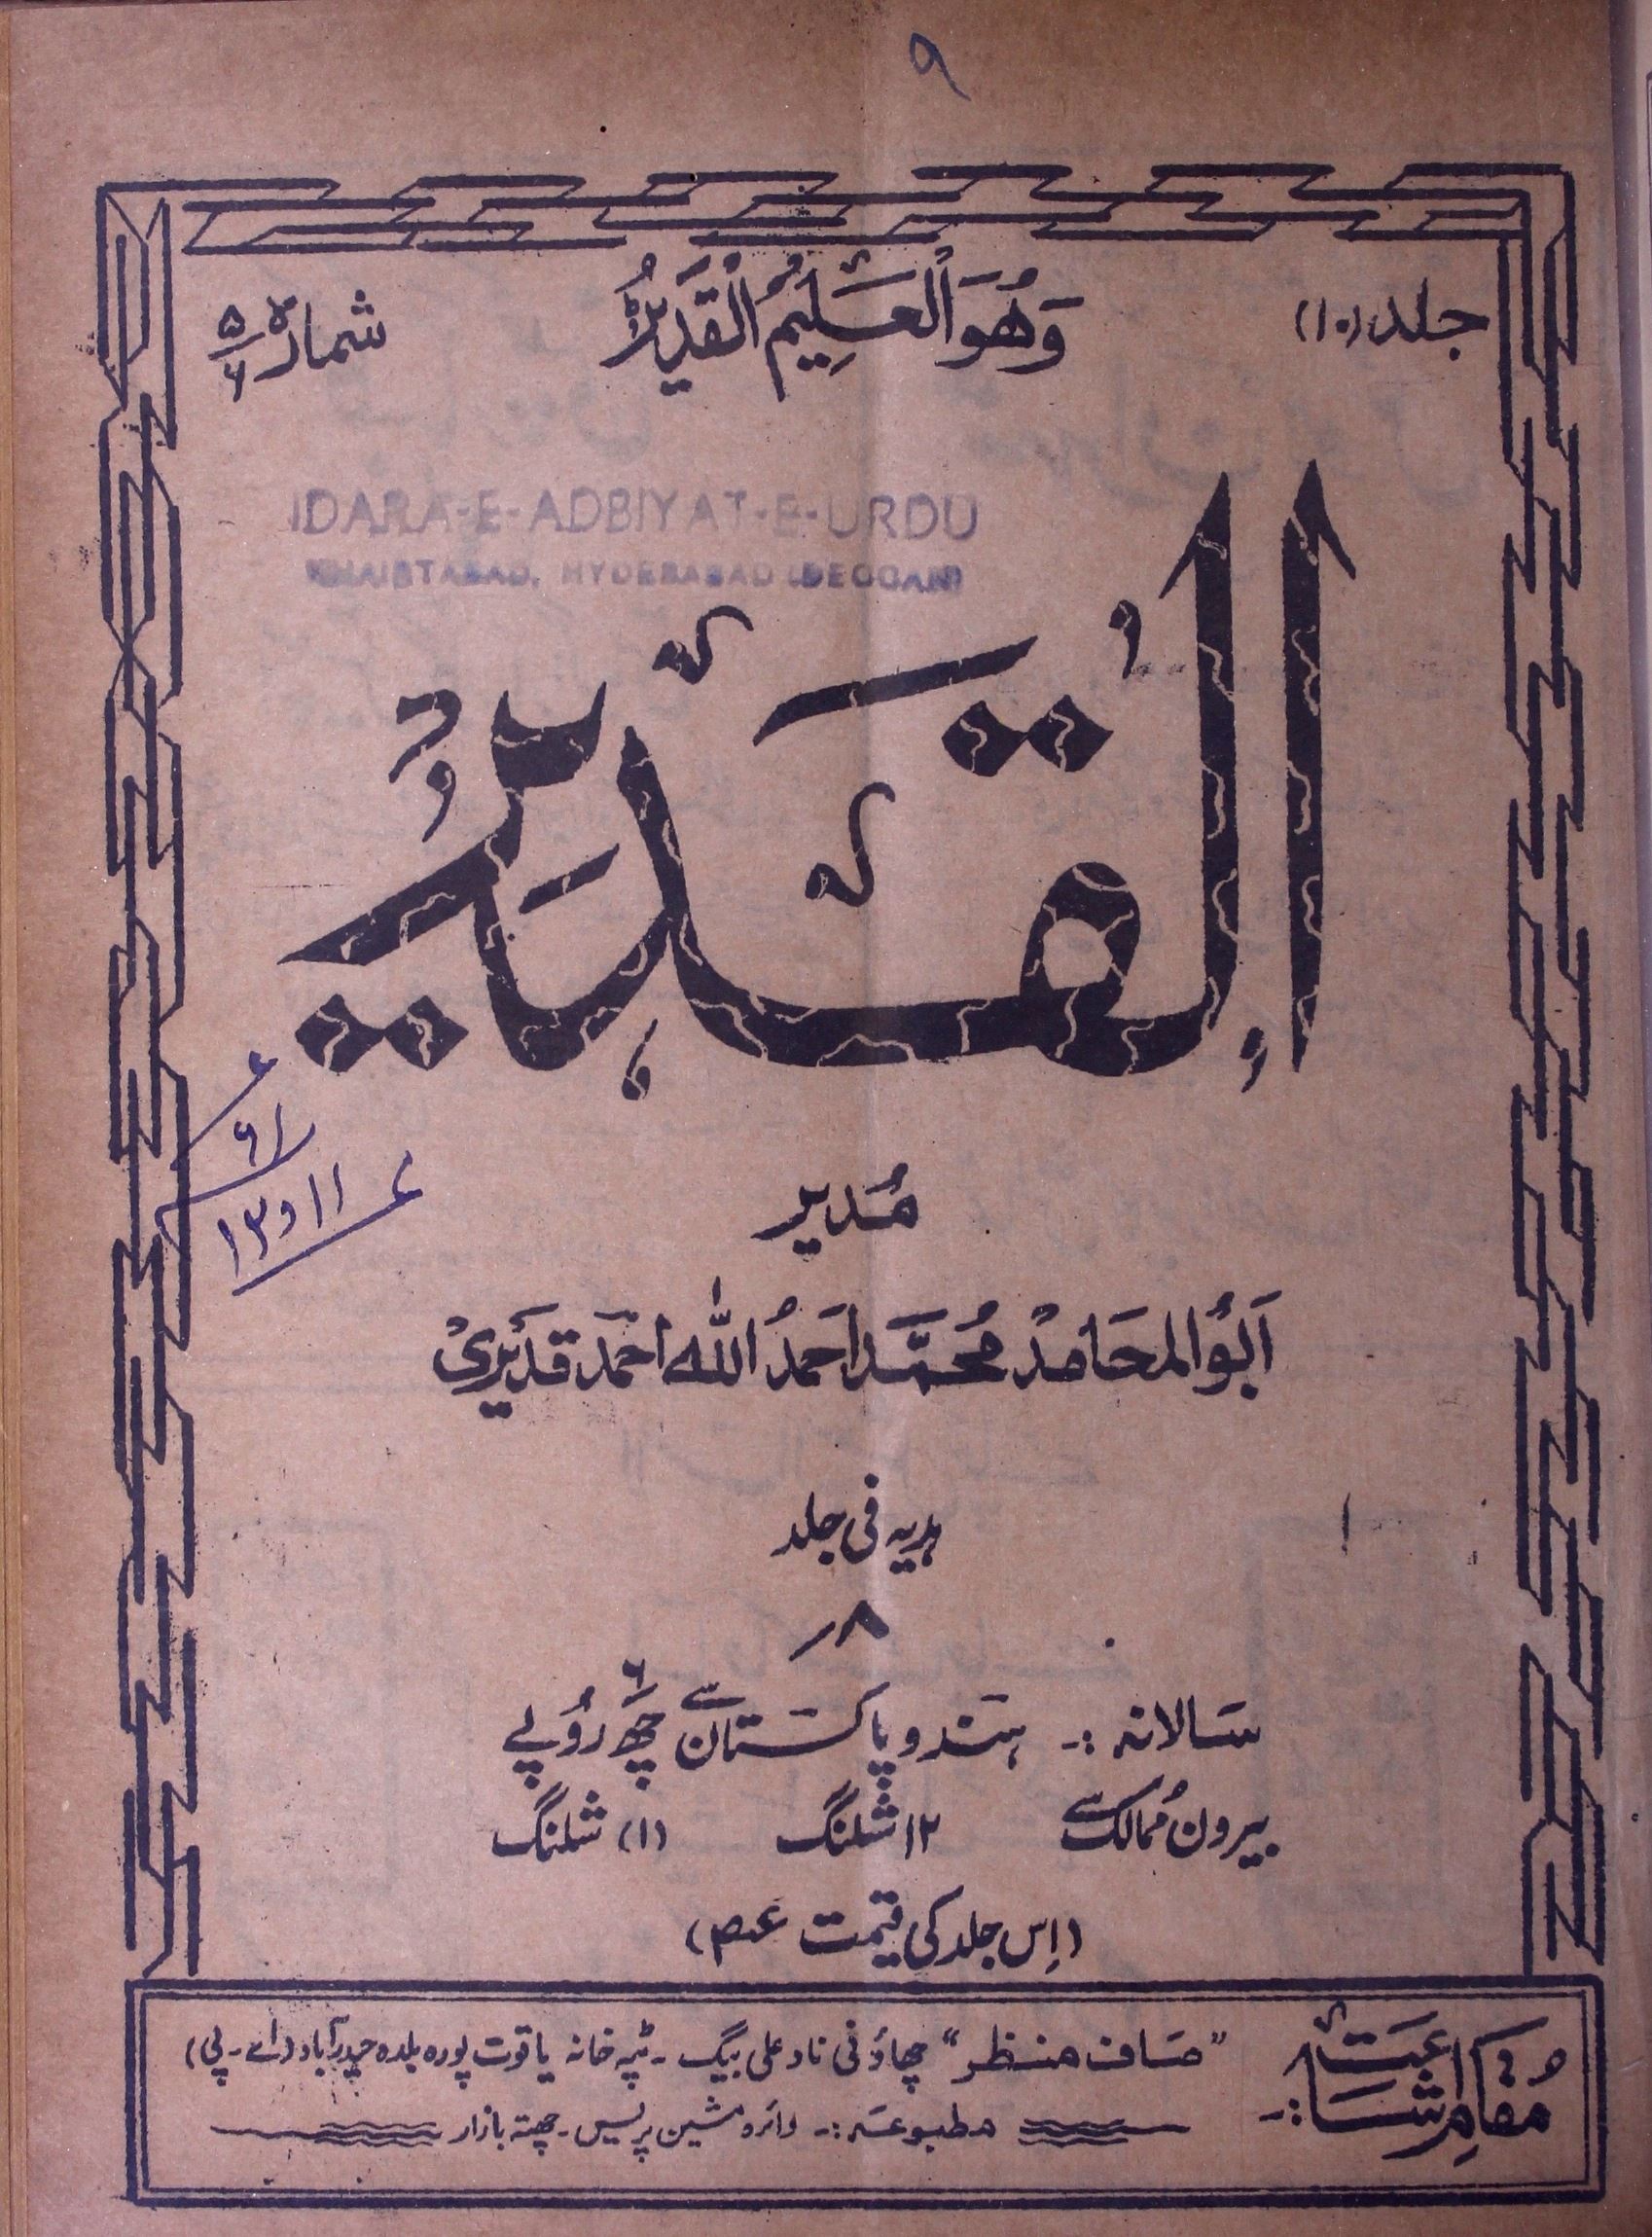 Al Qadeer Jild 10 Sh. 4-5 Nov.-Dec. 1960-Shumara Number-004,005